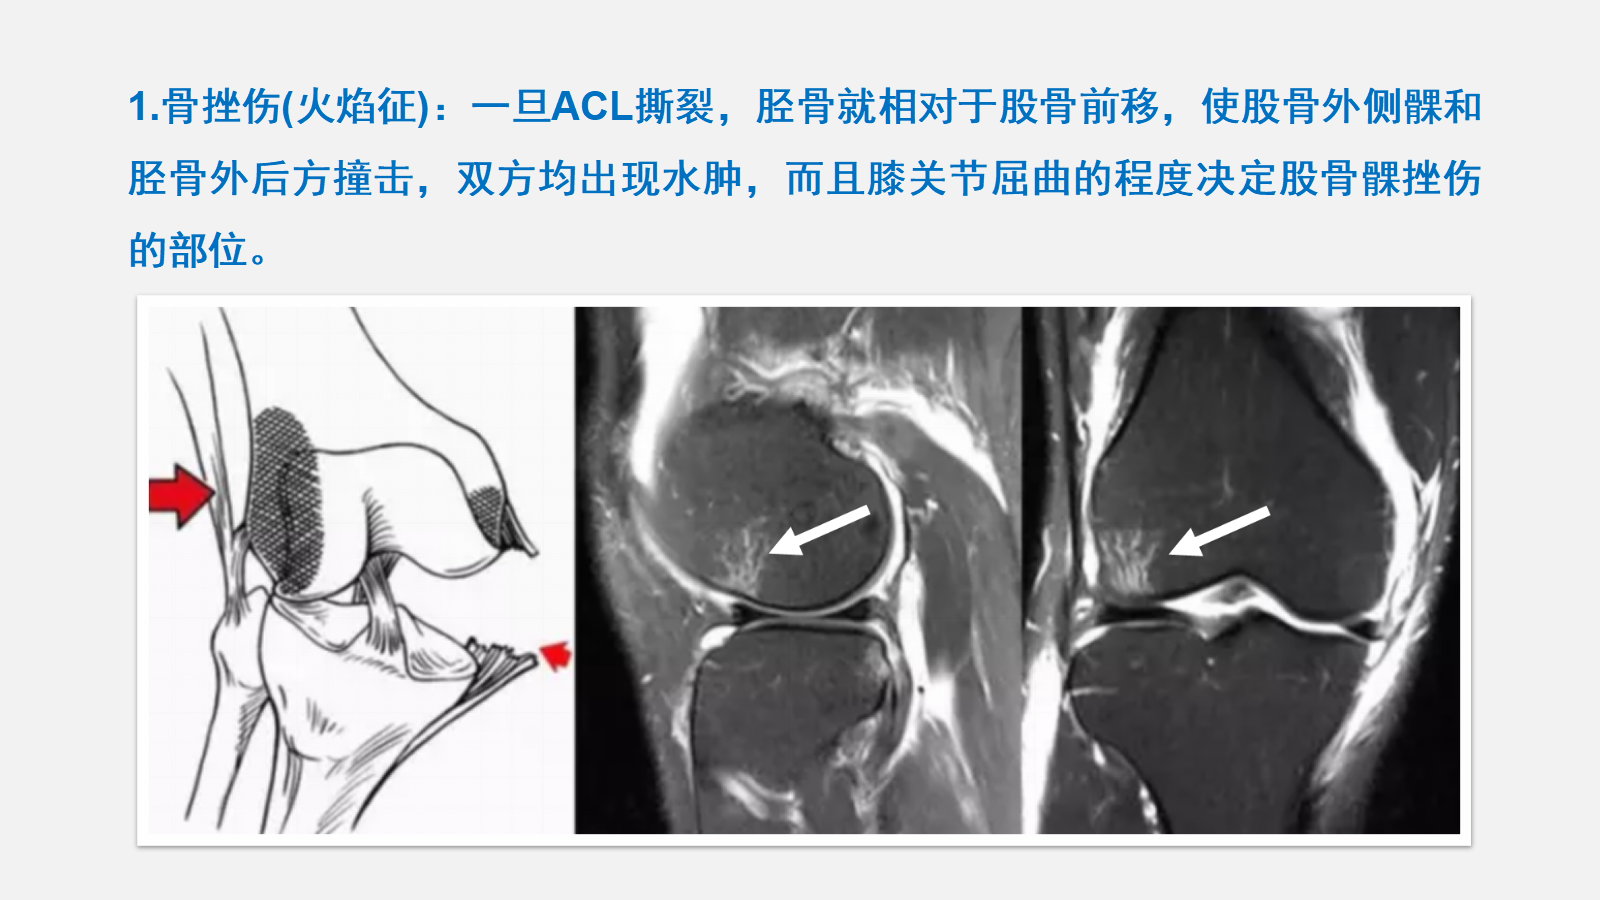 广州市民肘部扭挫伤治疗和肘部扭挫伤预防 - 知乎